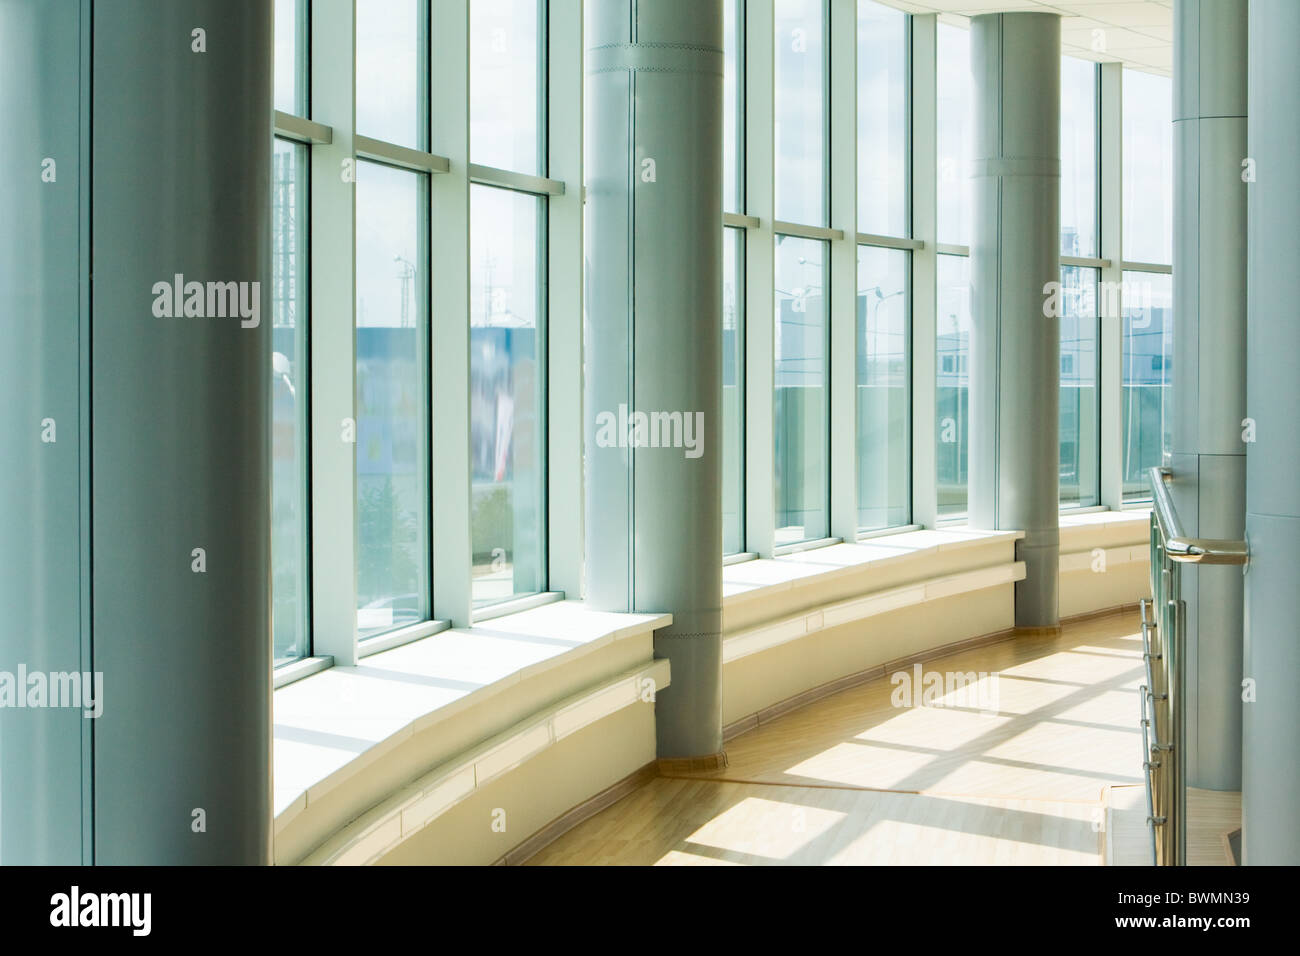 Bild des Korridors im Bürogebäude mit großen Fenstern vorbei Tageslicht Stockfoto